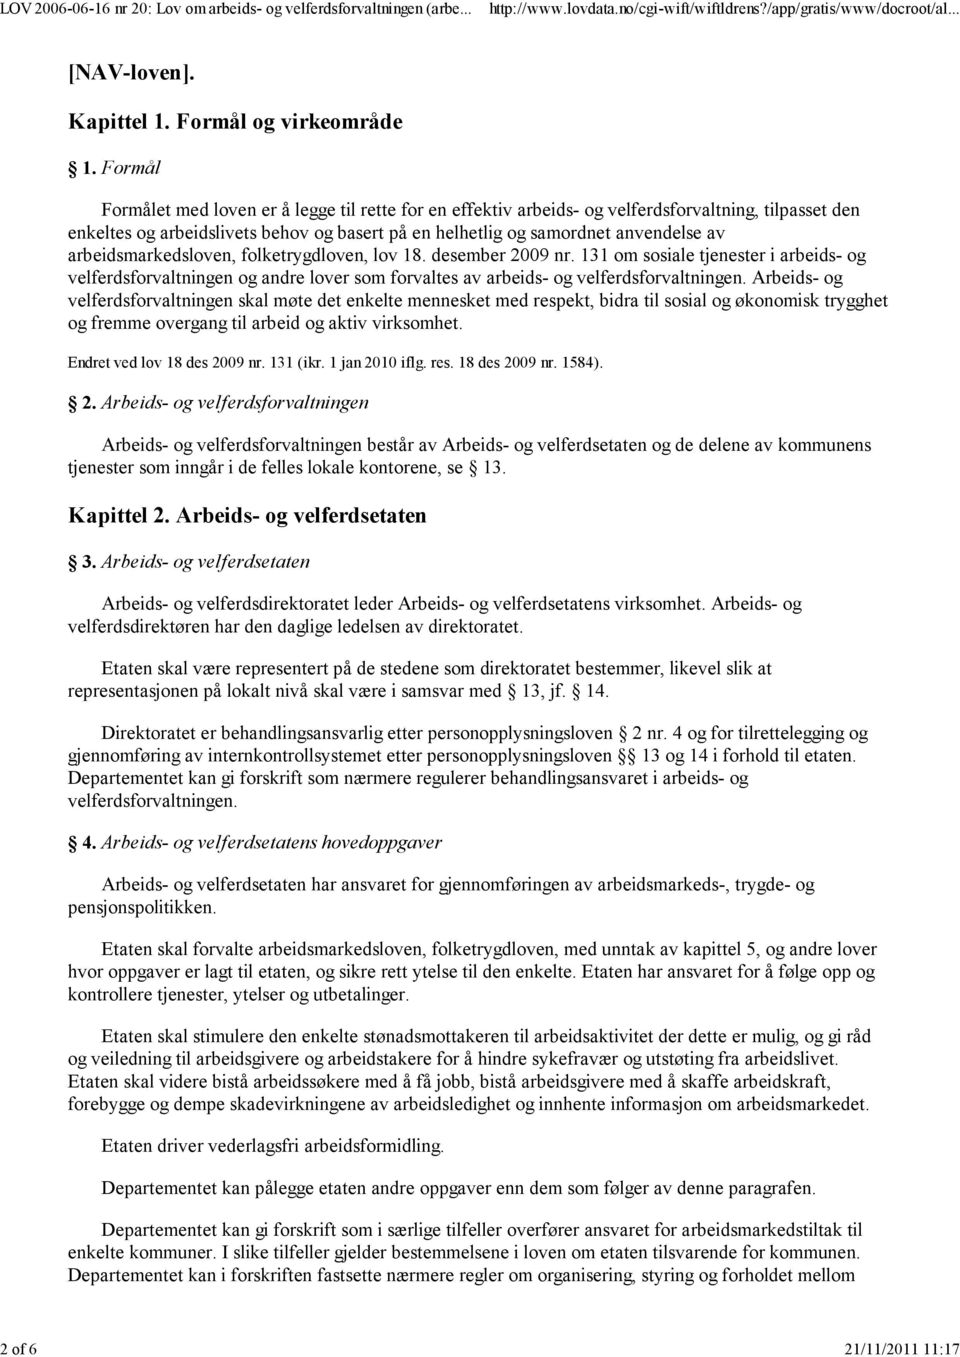 arbeidsmarkedsloven, folketrygdloven, lov 18. desember 2009 nr. 131 om sosiale tjenester i arbeids- og velferdsforvaltningen og andre lover som forvaltes av arbeids- og velferdsforvaltningen.